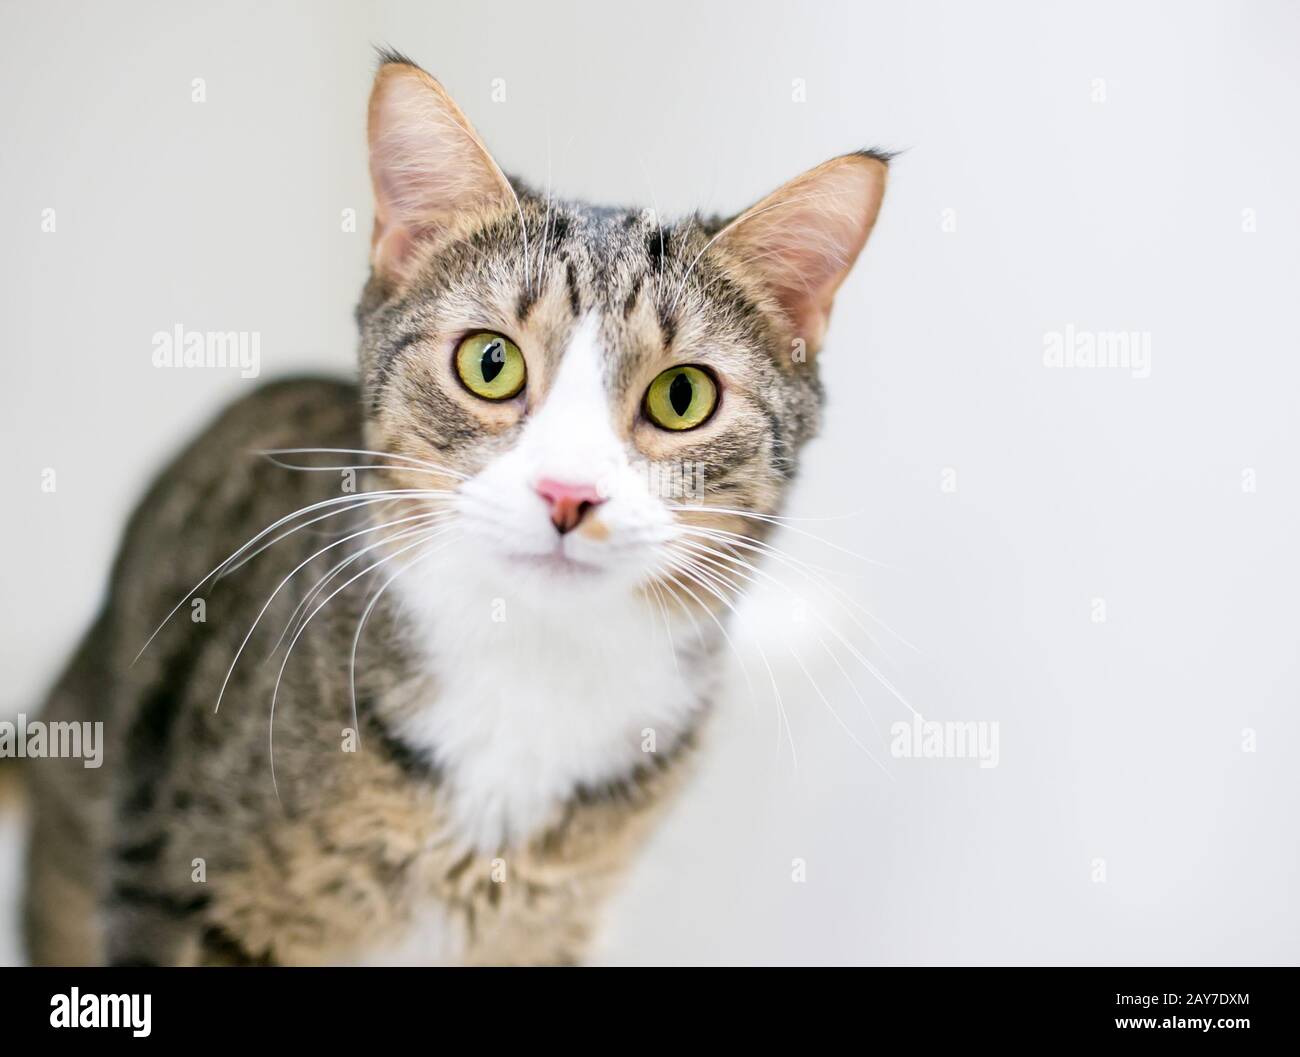 Un chat de shorthair domestique avec tabby brun et des marques blanches Banque D'Images